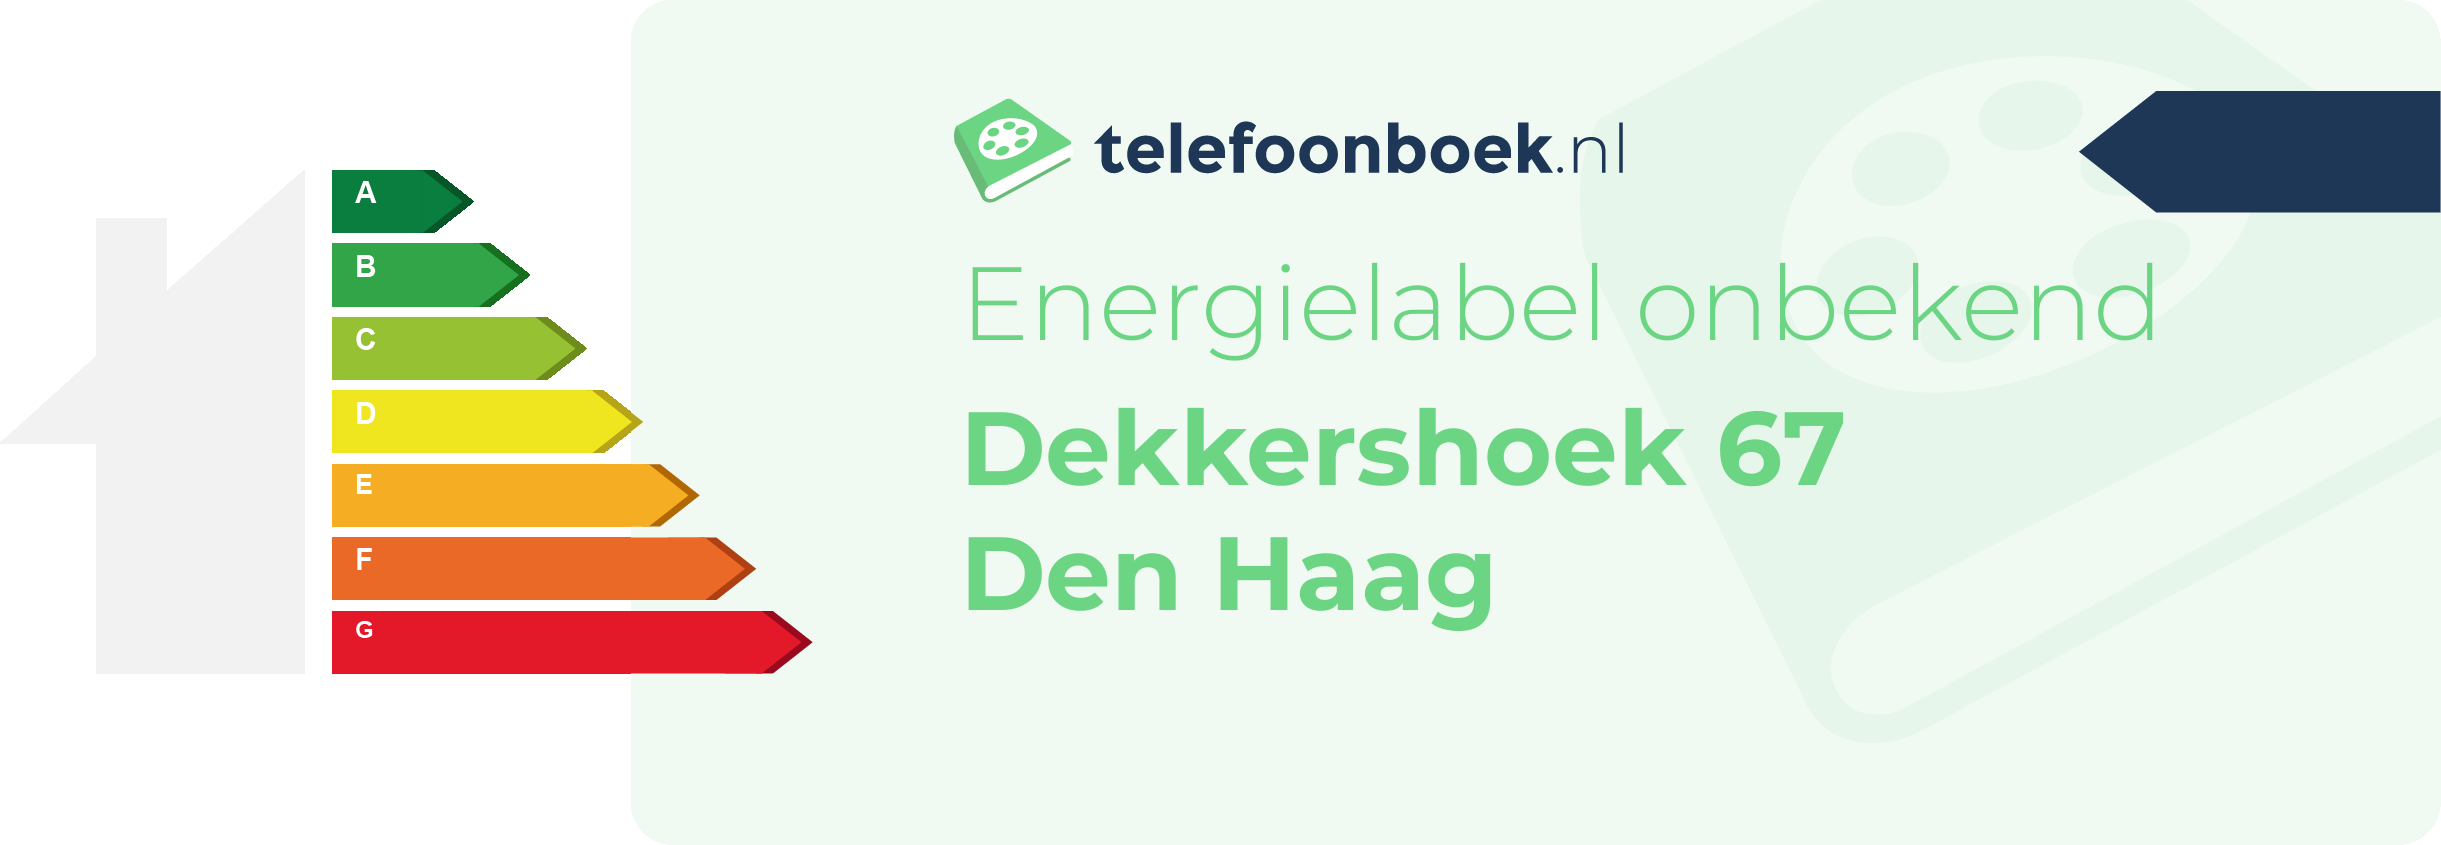 Energielabel Dekkershoek 67 Den Haag